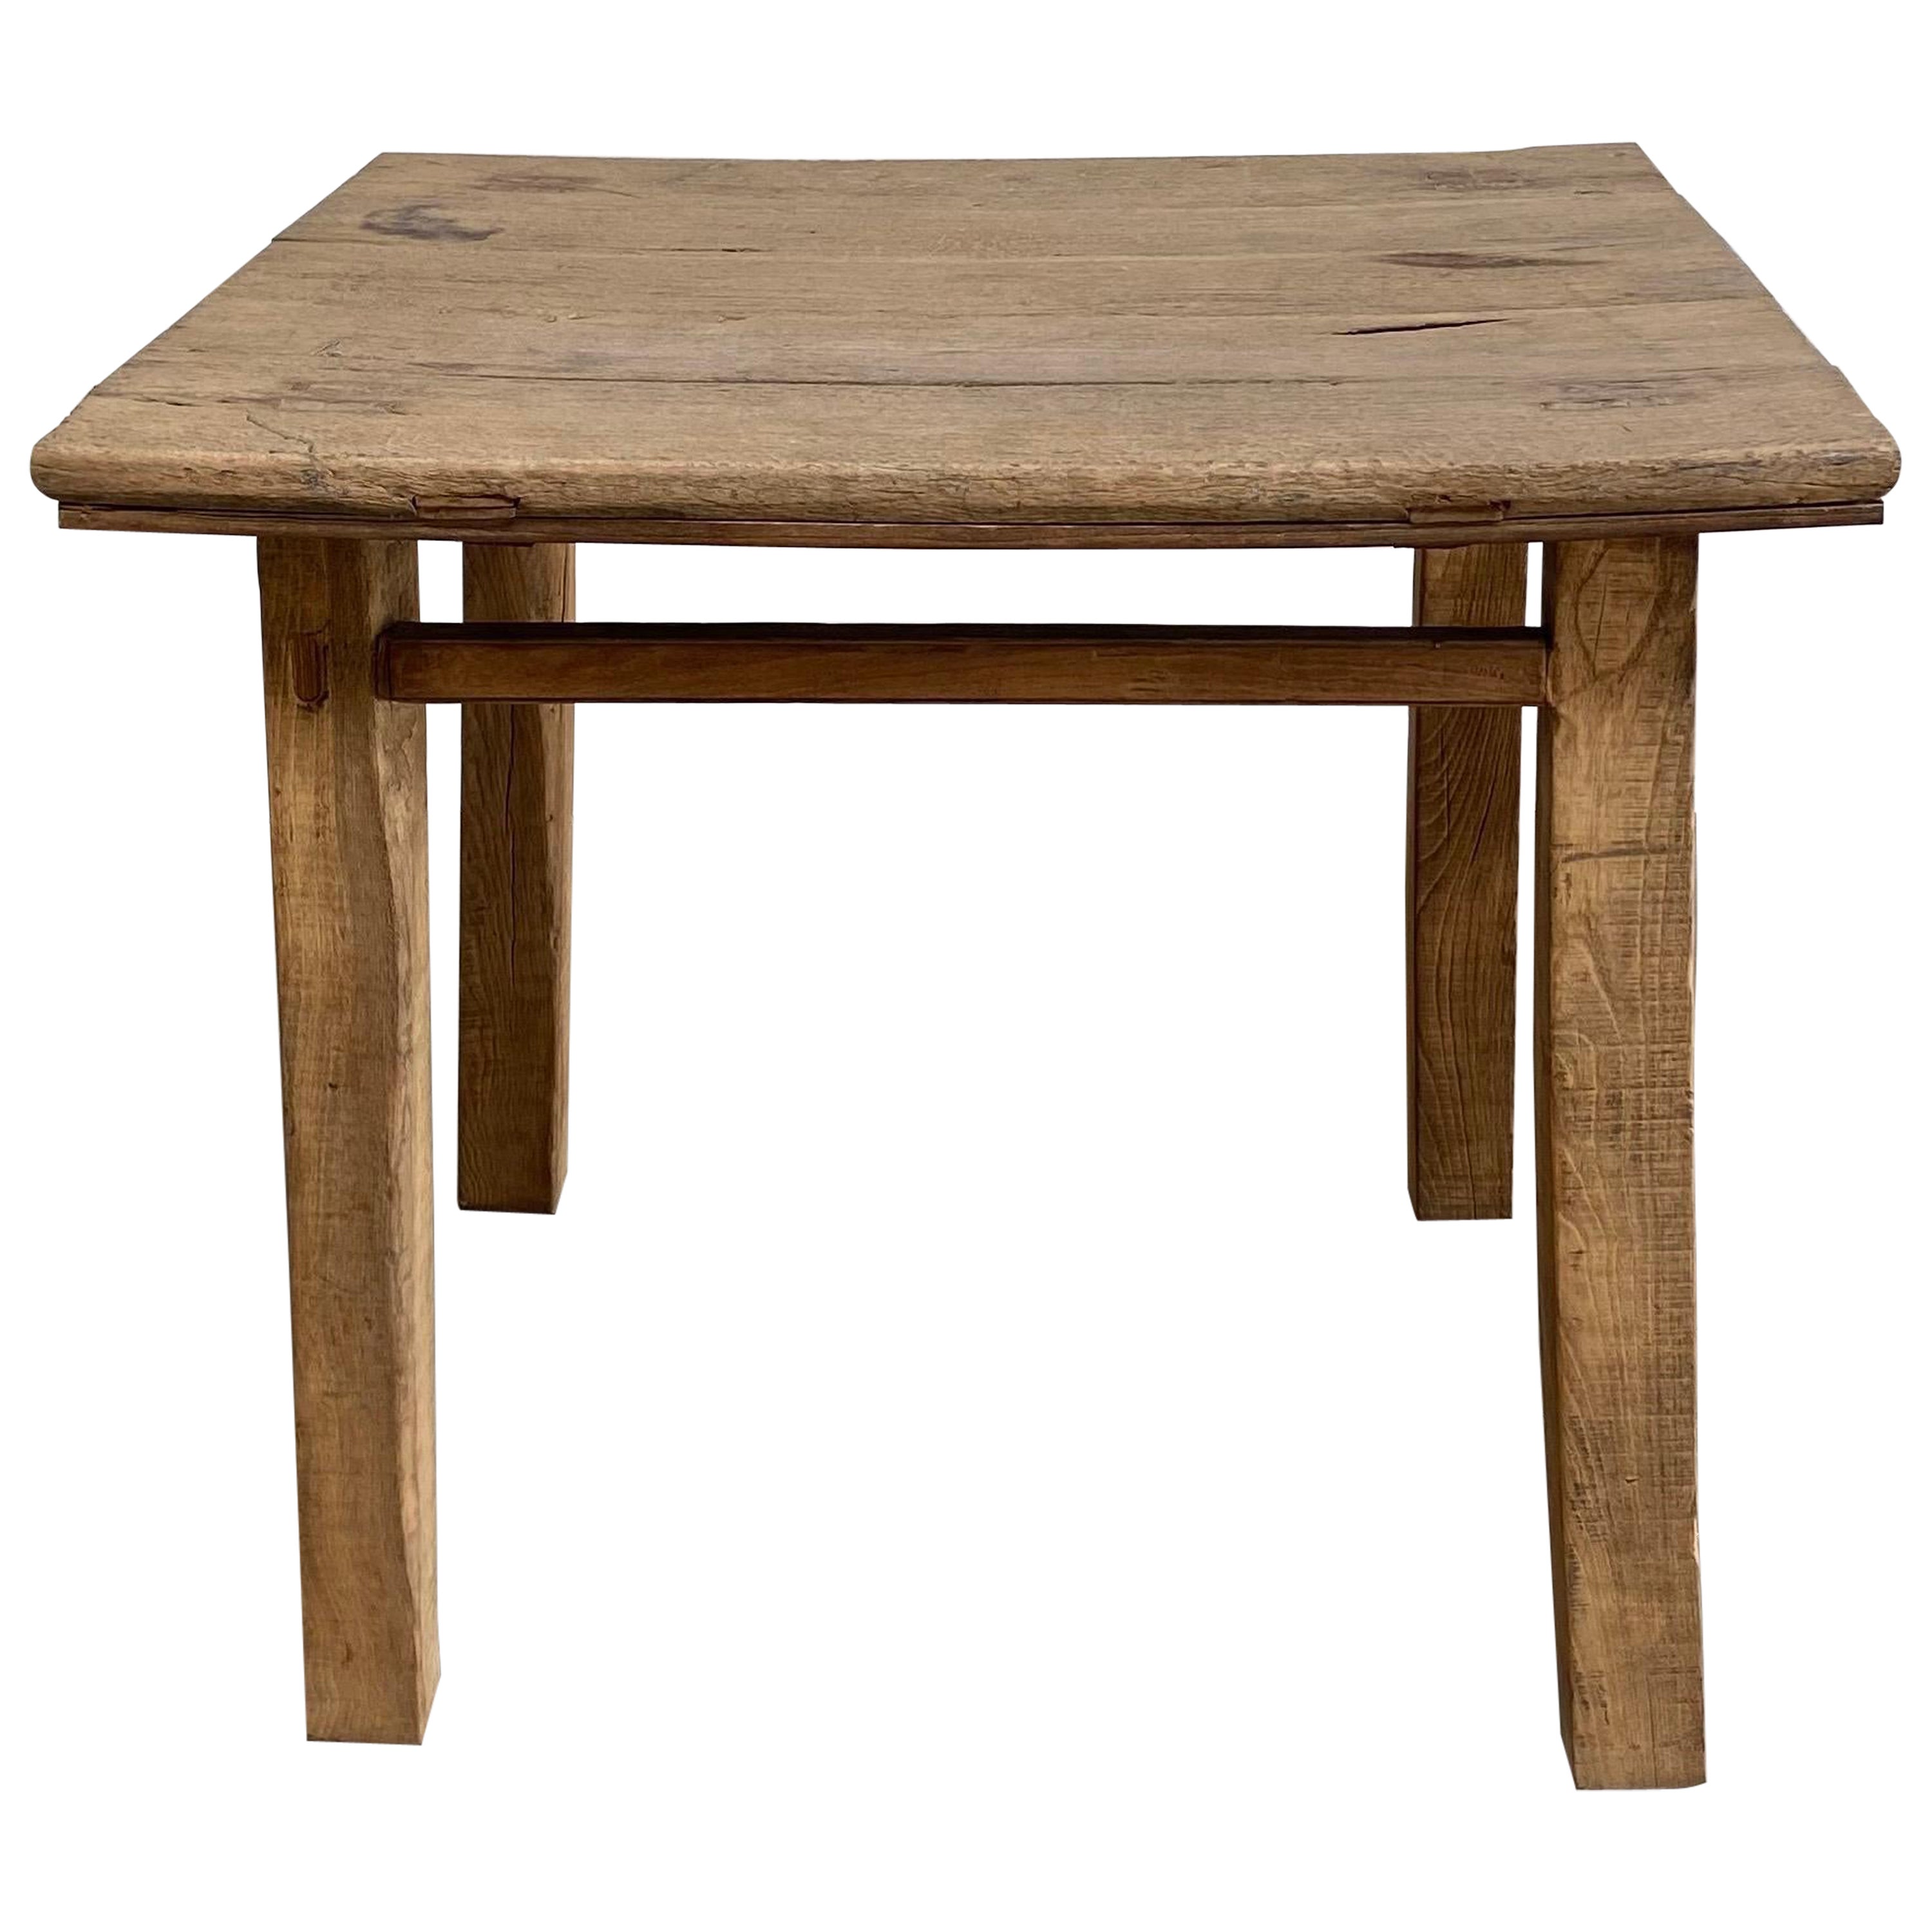 Vintage Elm Wood Side Table